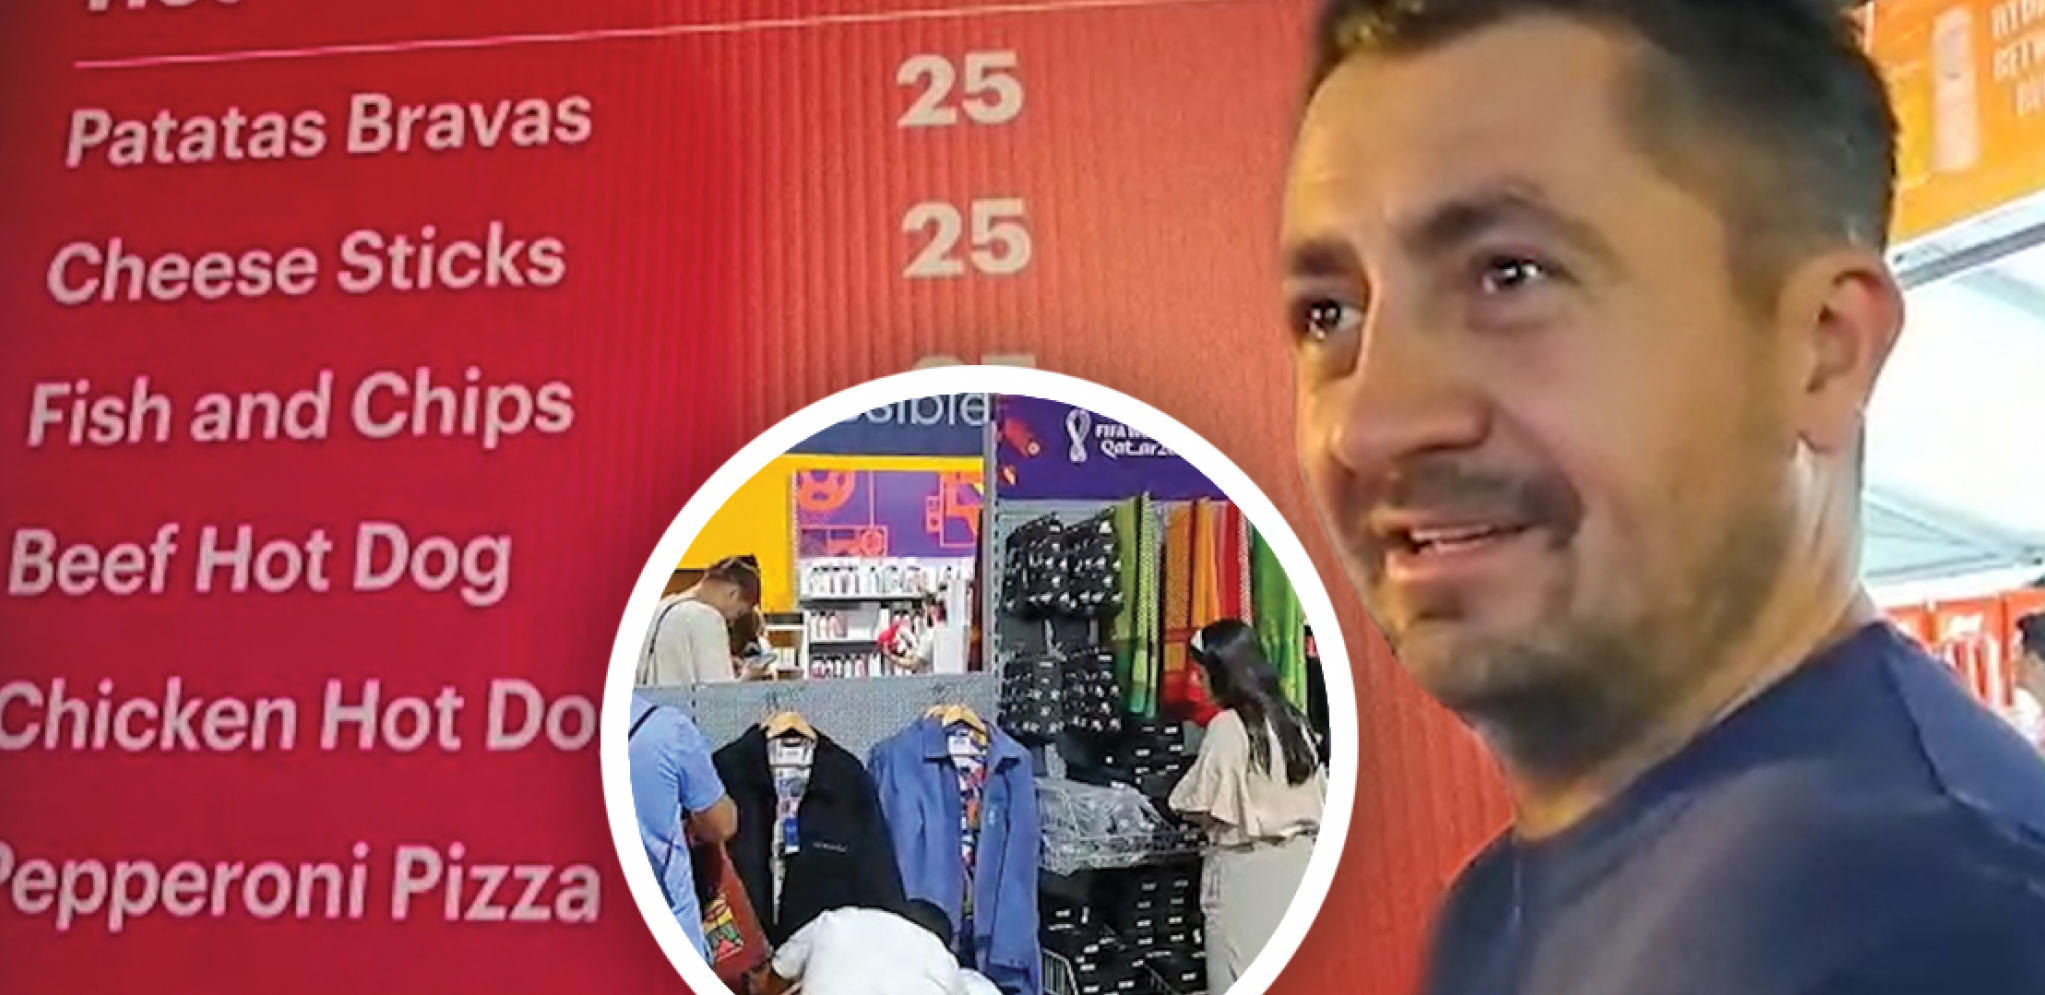 KOLIKO KOŠTAJU PIVO I PICA U KATARU? Špankinja se umalo prevrnula shativši koja je cena garderobe (VIDEO)